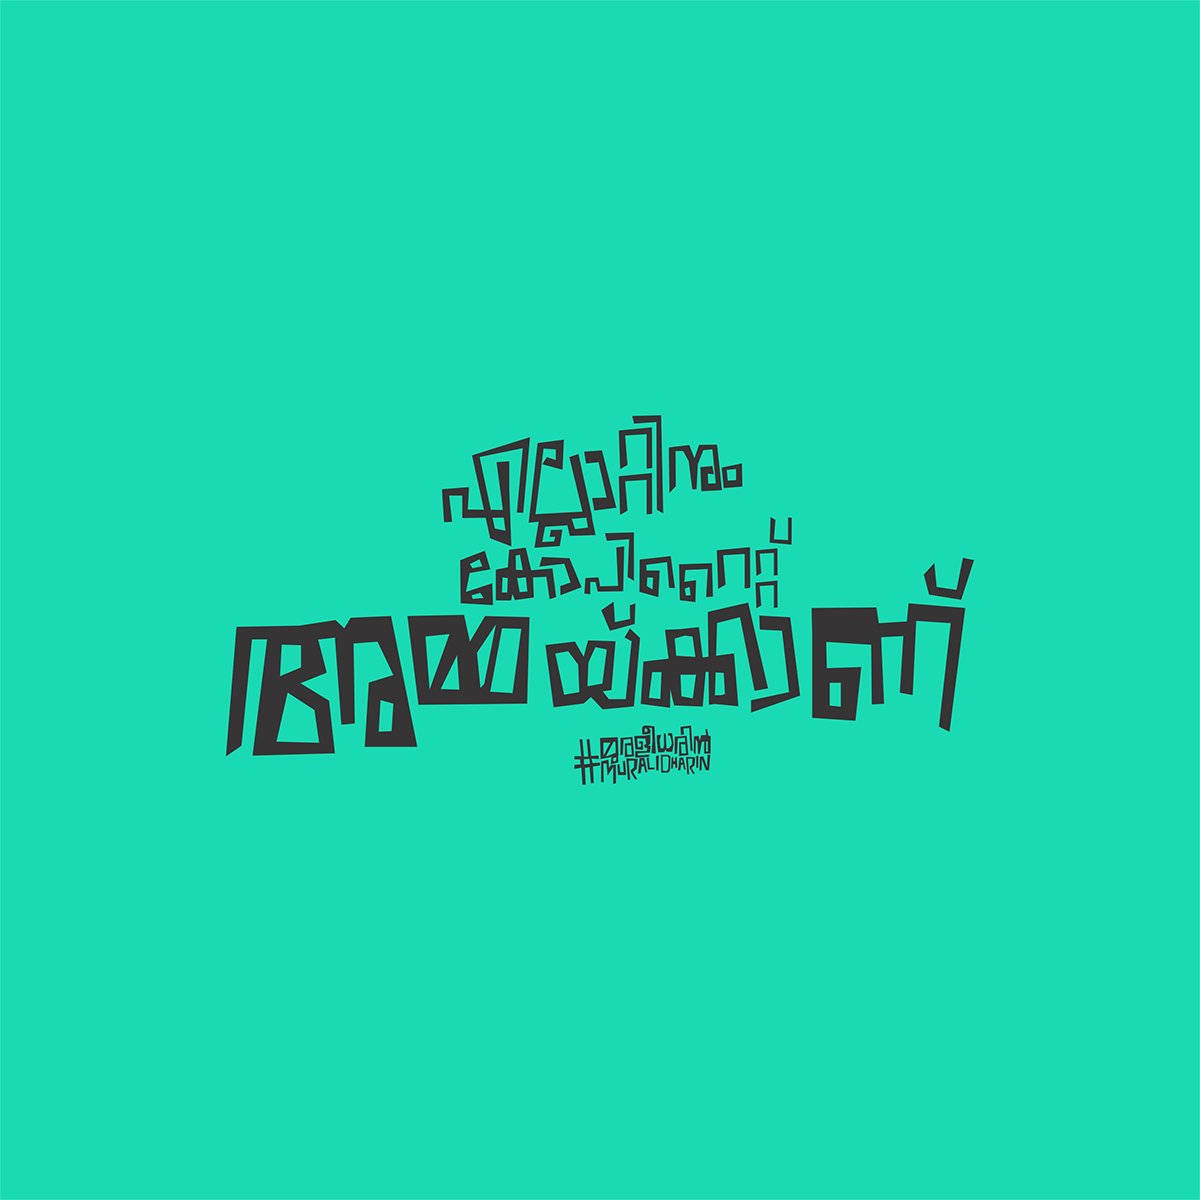 amma Malayalam font muralidharin ammafont thinkingfilms kerala malayalam malayalam fonts Malayalam Typography New Malayalam Fonts